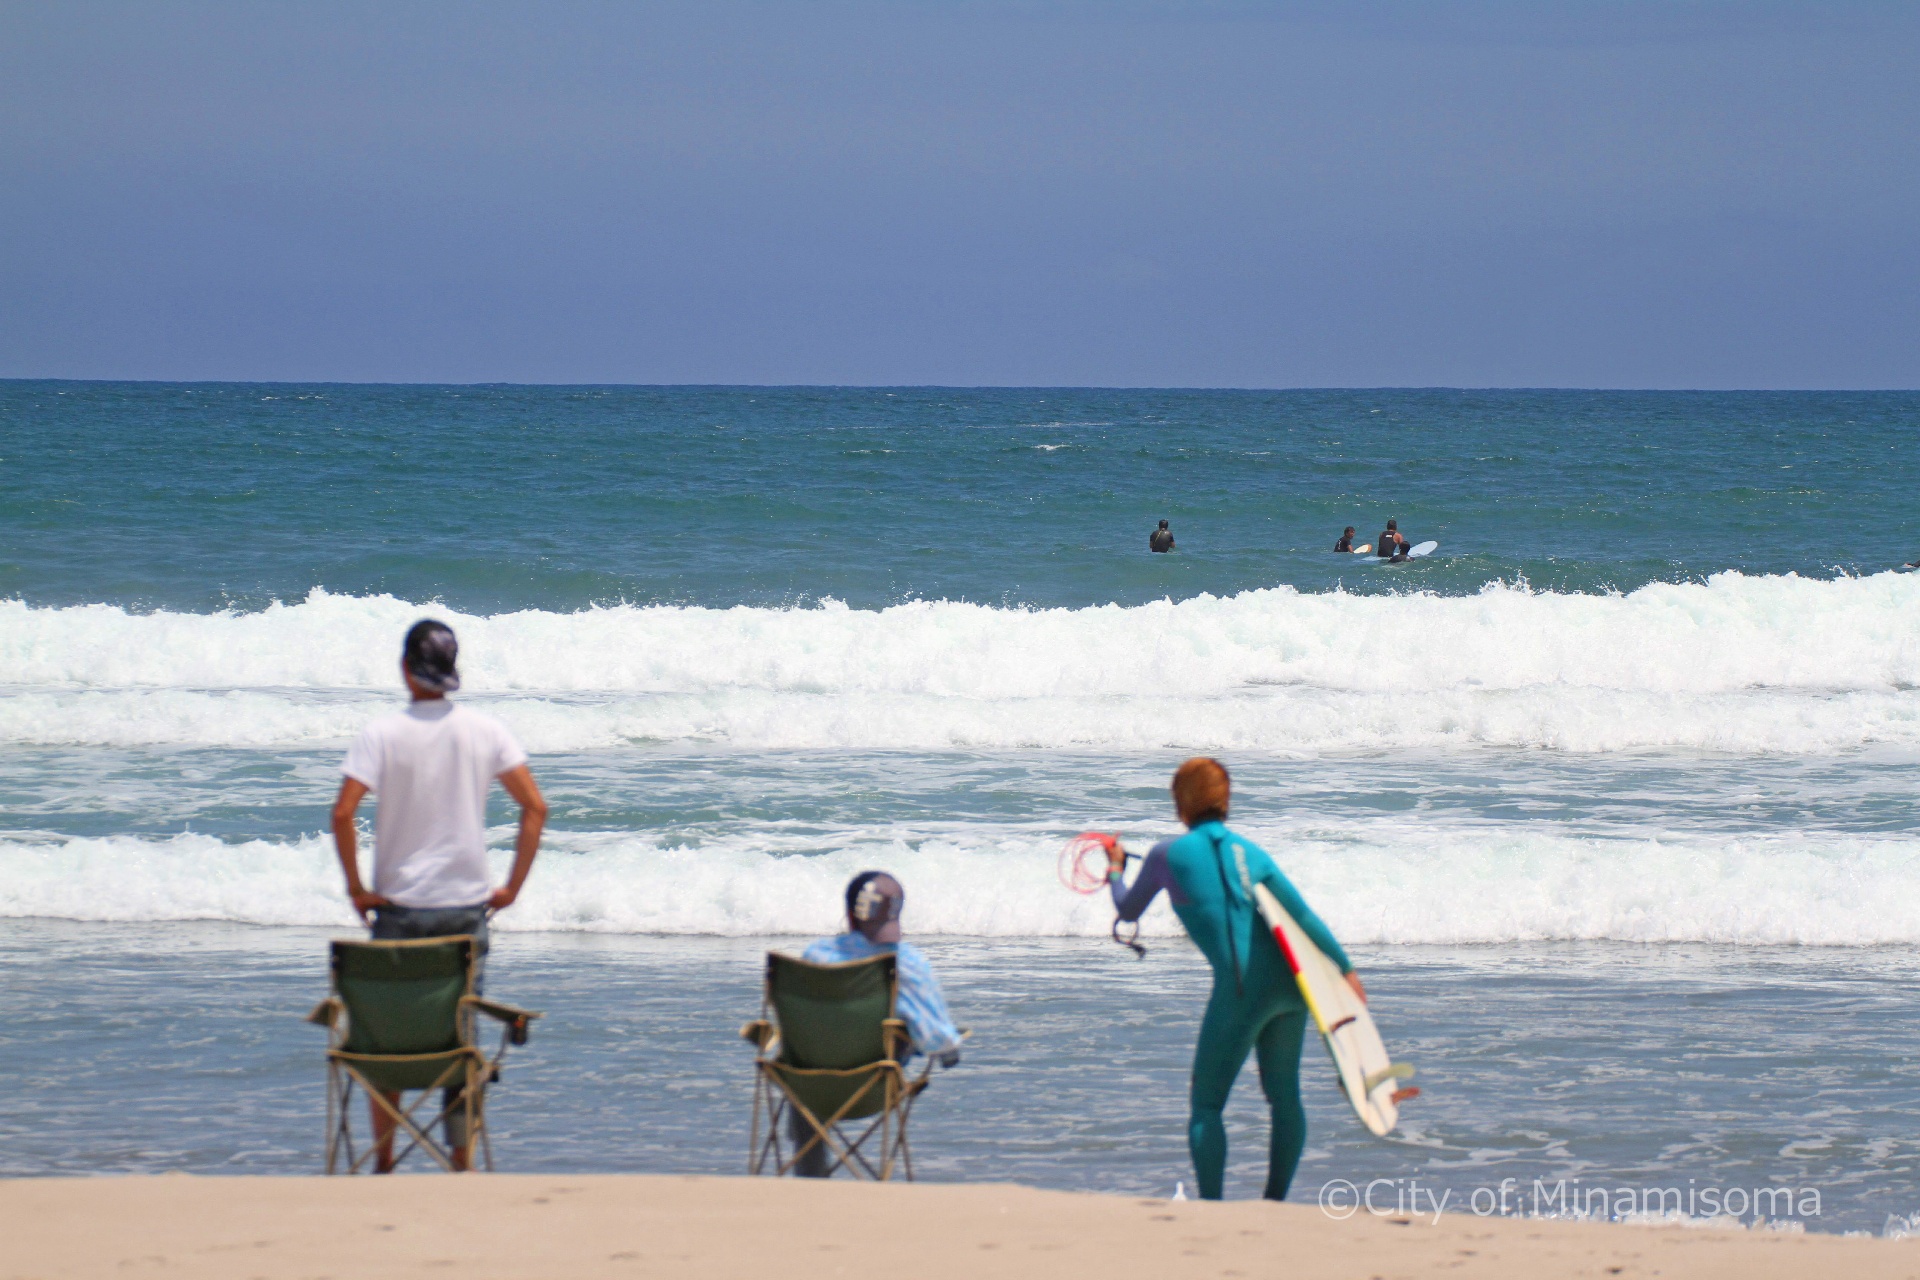 北泉海岸でサーフィンをする人と、砂浜でそれを見ている人の様子。